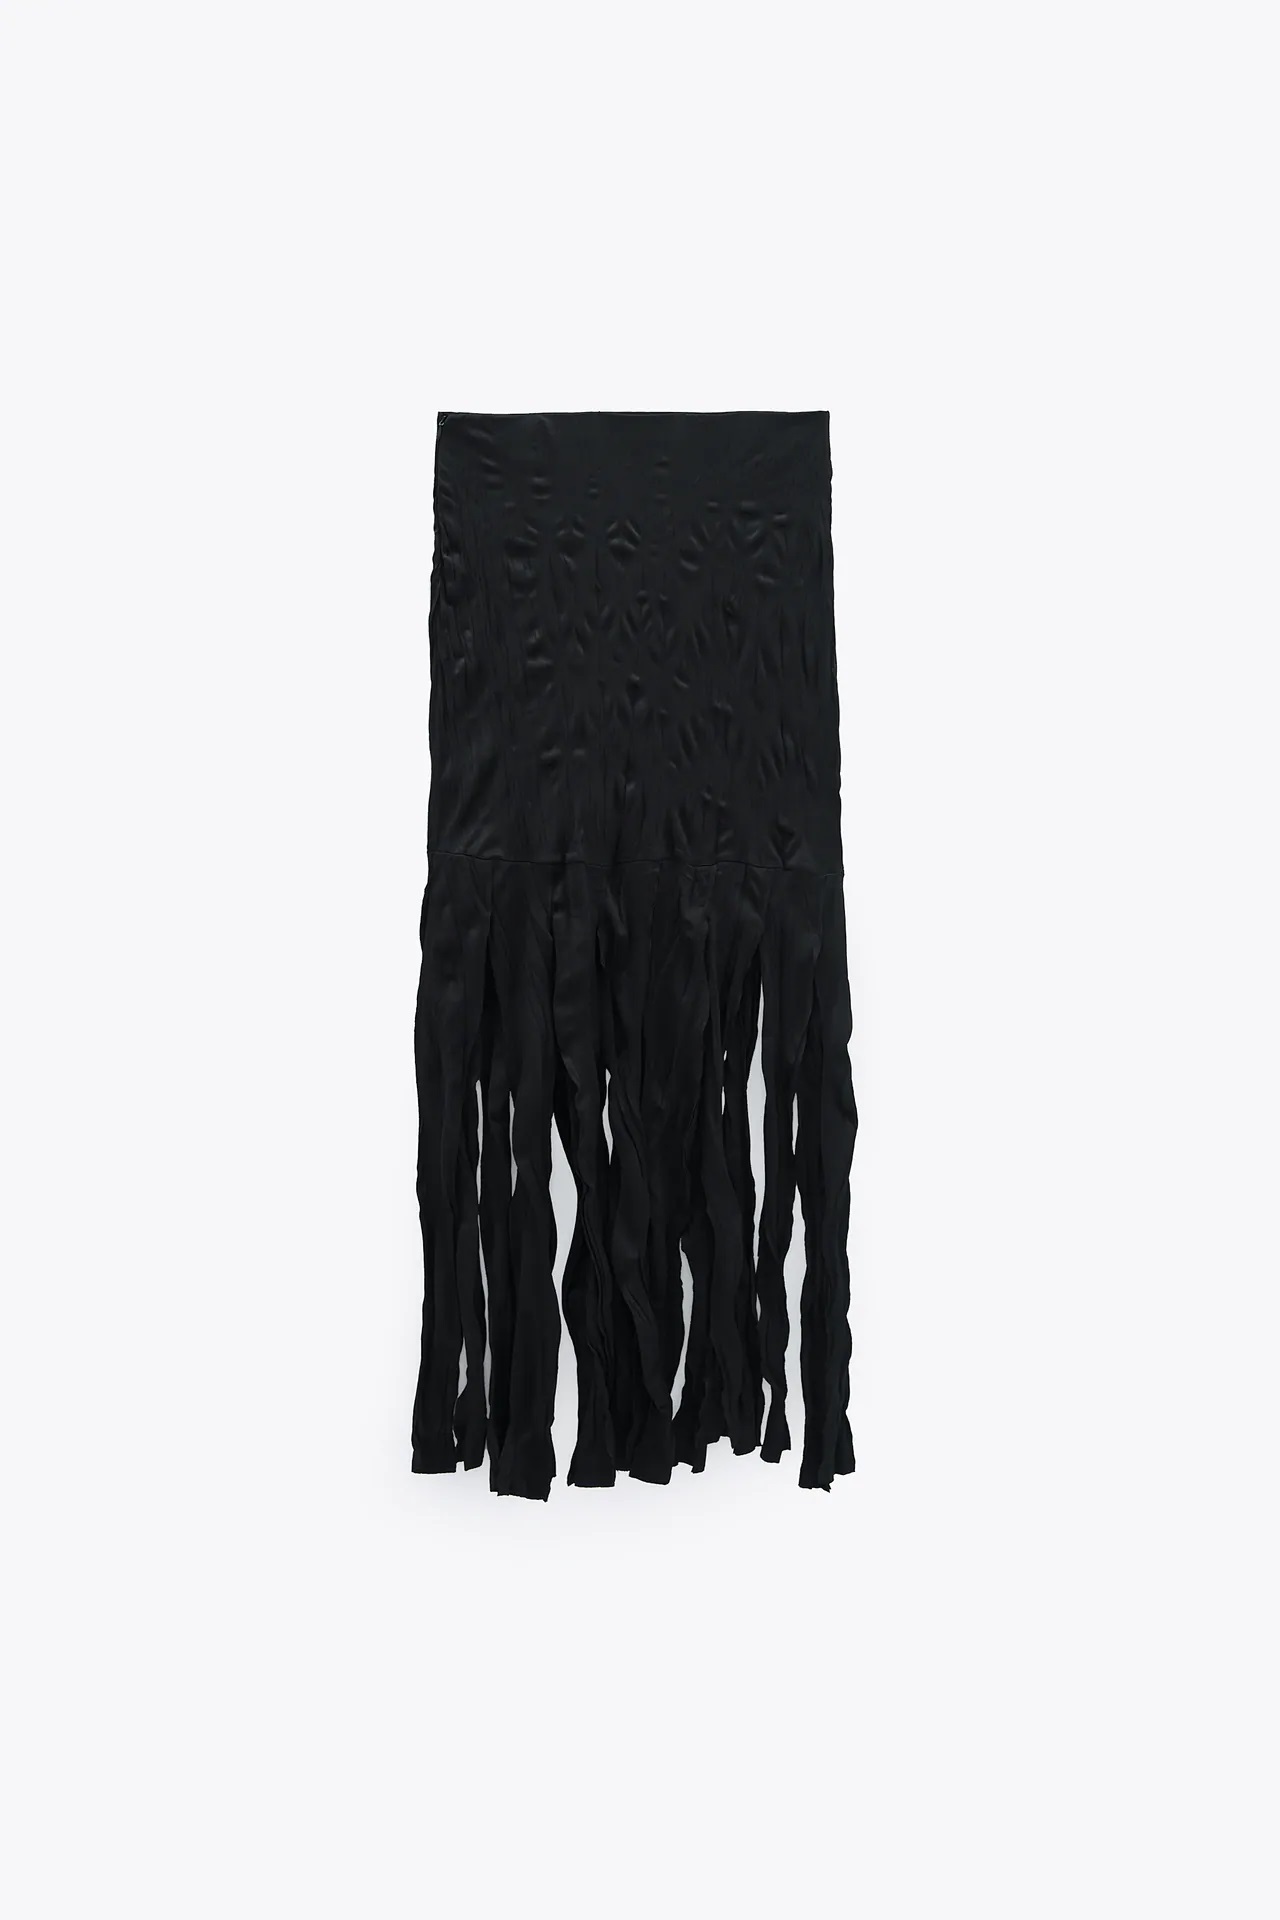 Esta es la falda con flecos más polémica de Zara ¿Disfraz de bruja o alta costura?